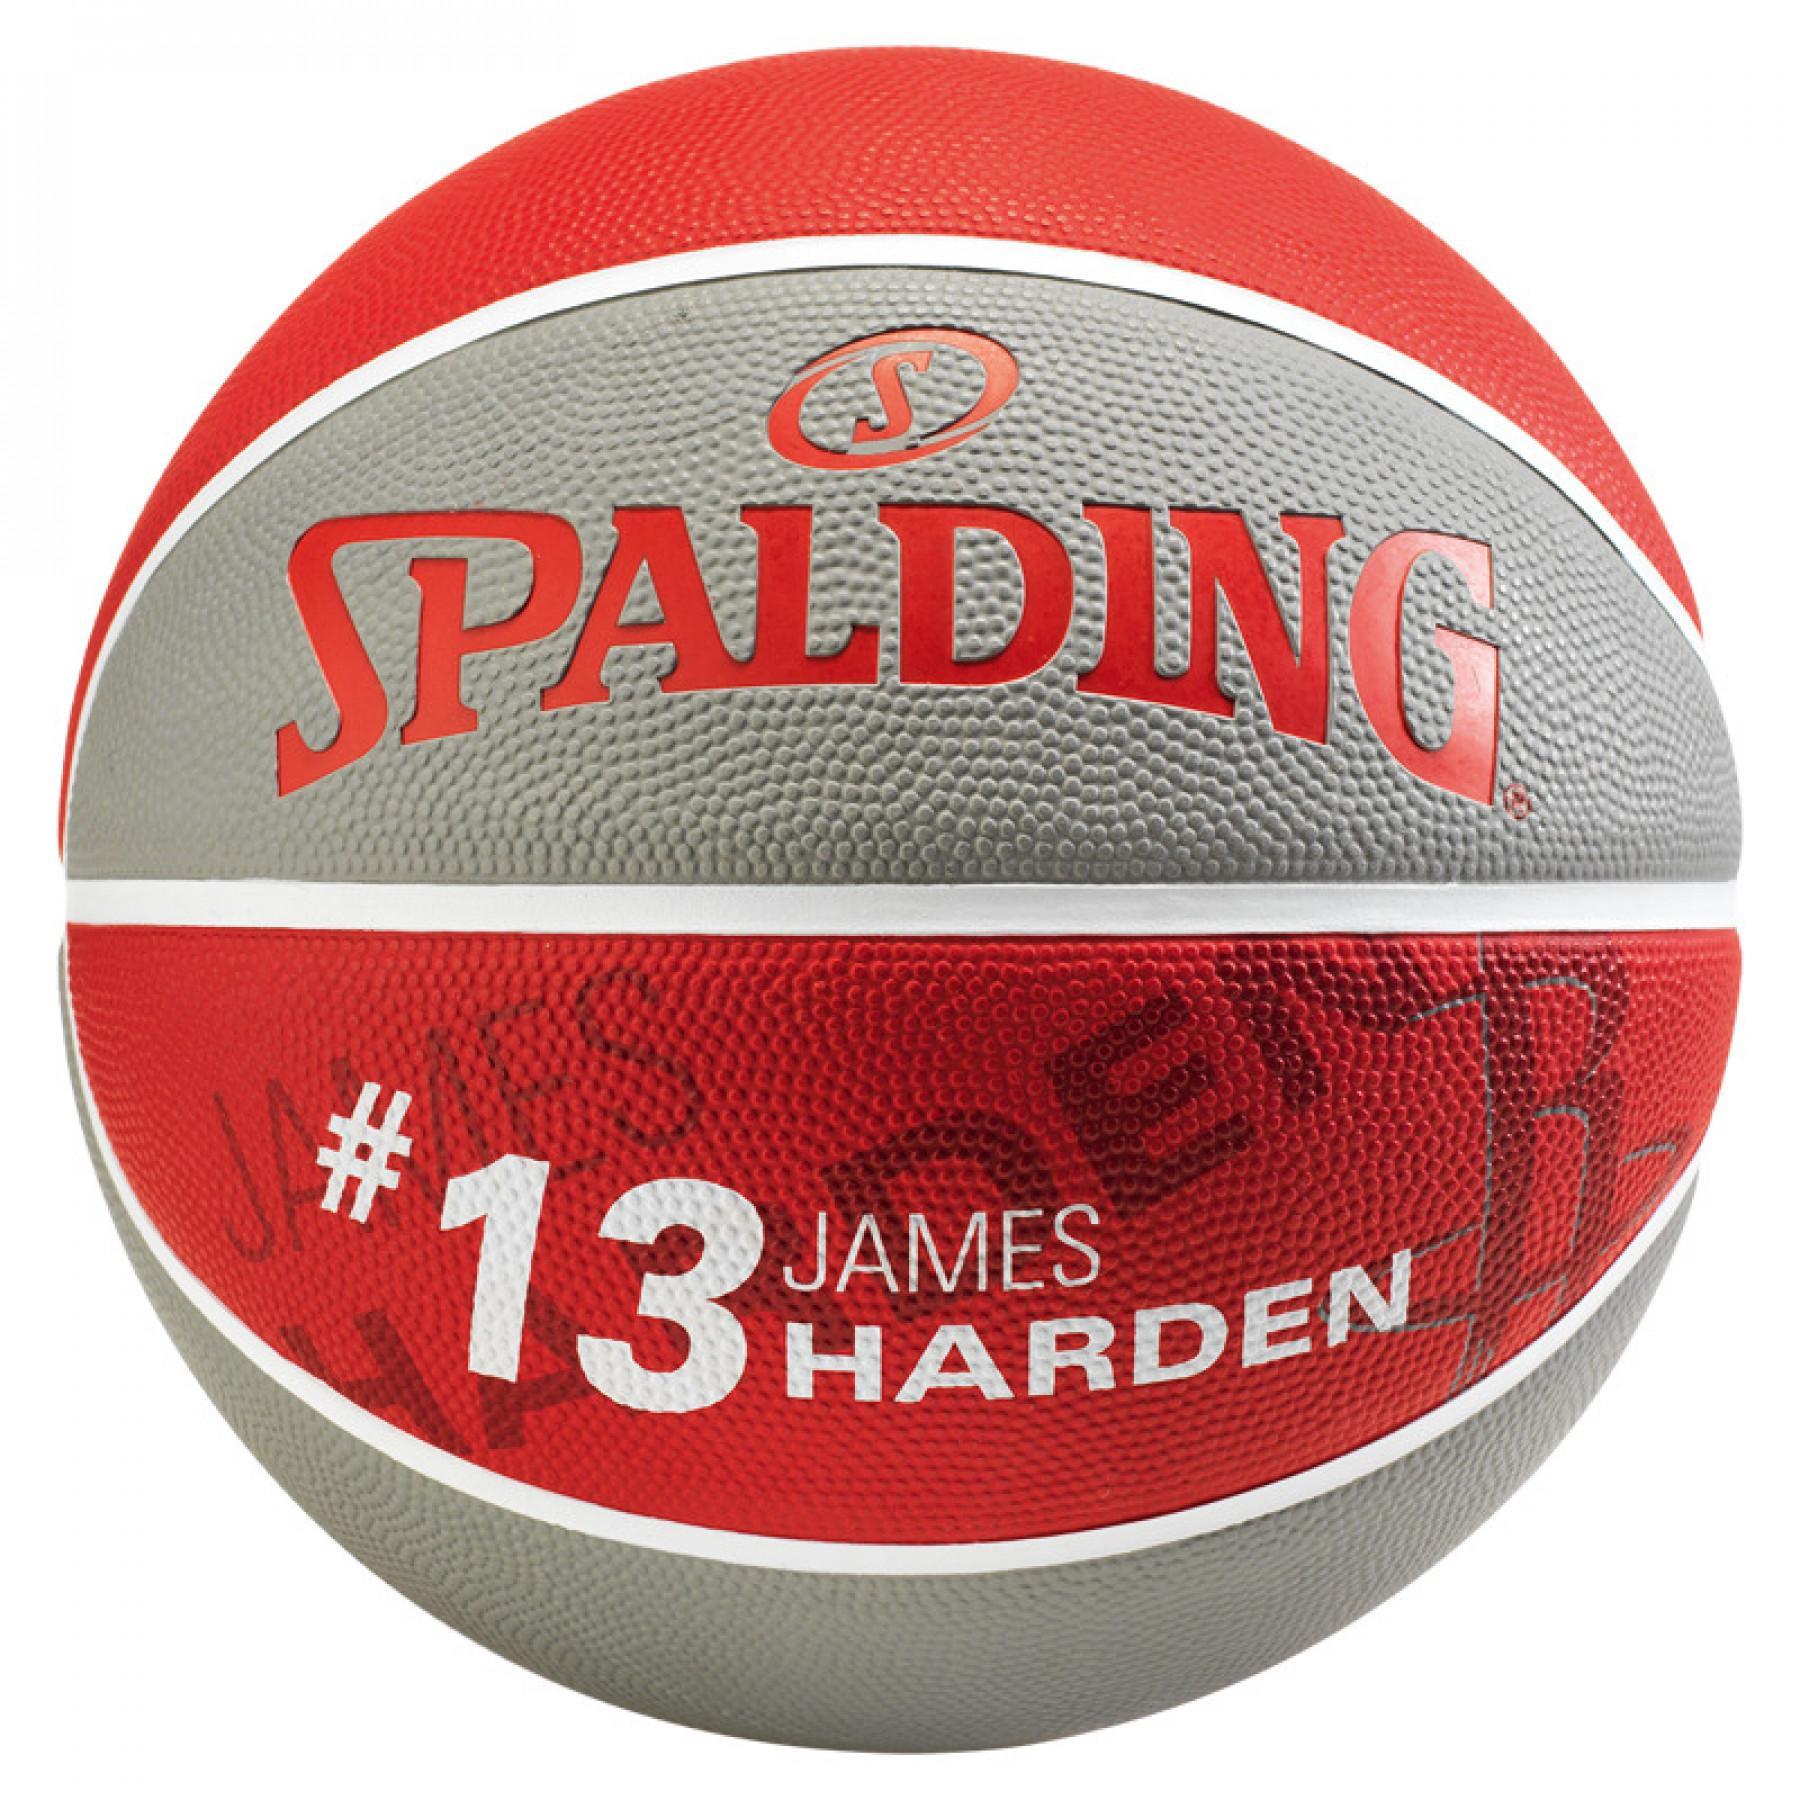 Globo Spalding NBA Player James Harden (83-845z)